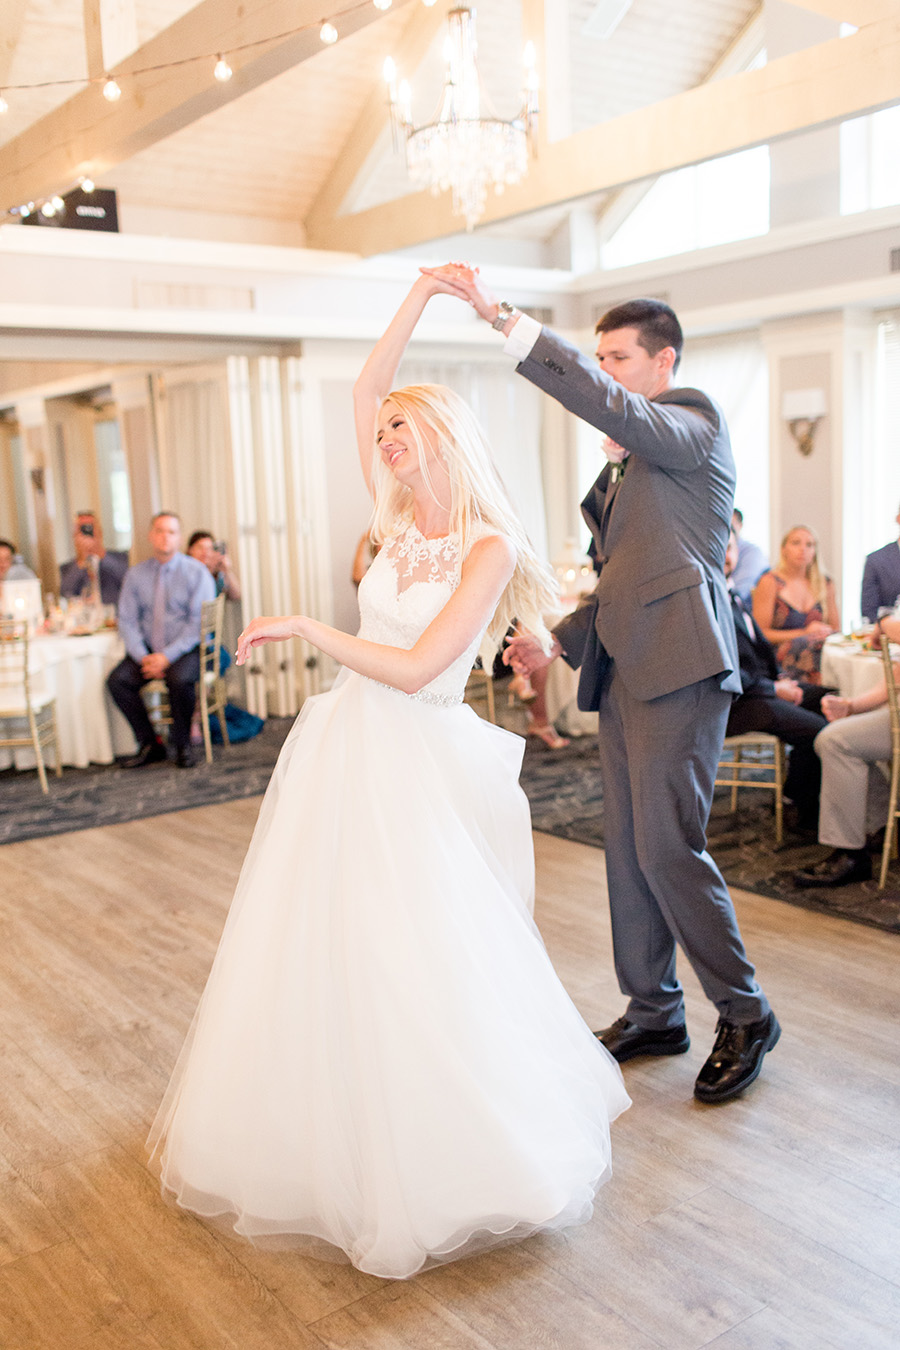 couple share a twirl on dance floor